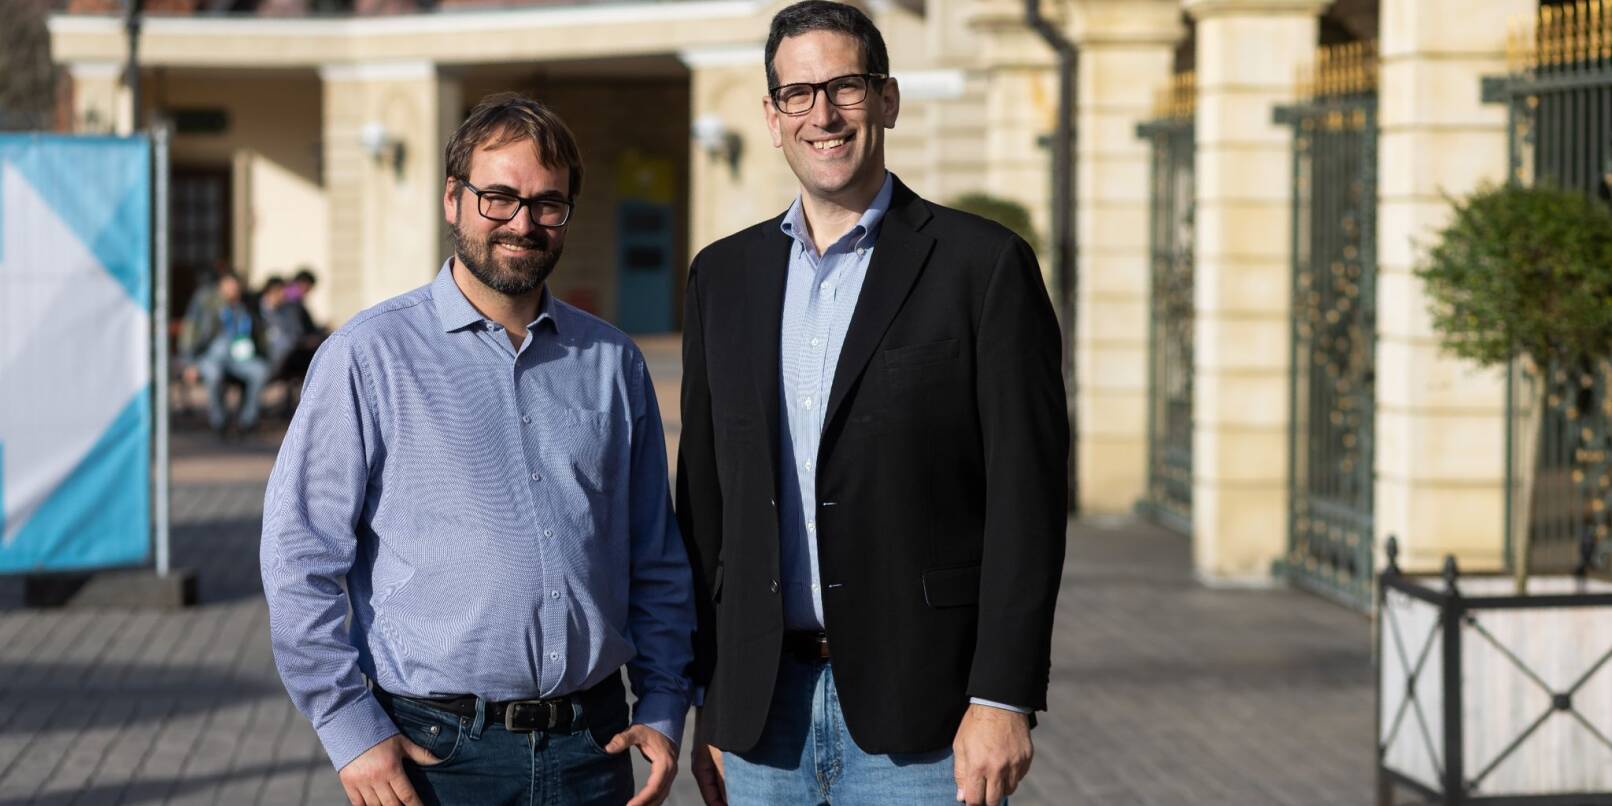 Kristian Ørmen (l), von der schwedischen Stiftung Internetstiftelsen, und David Huberman (r), von der internationalen Internetverwaltung ICANN.